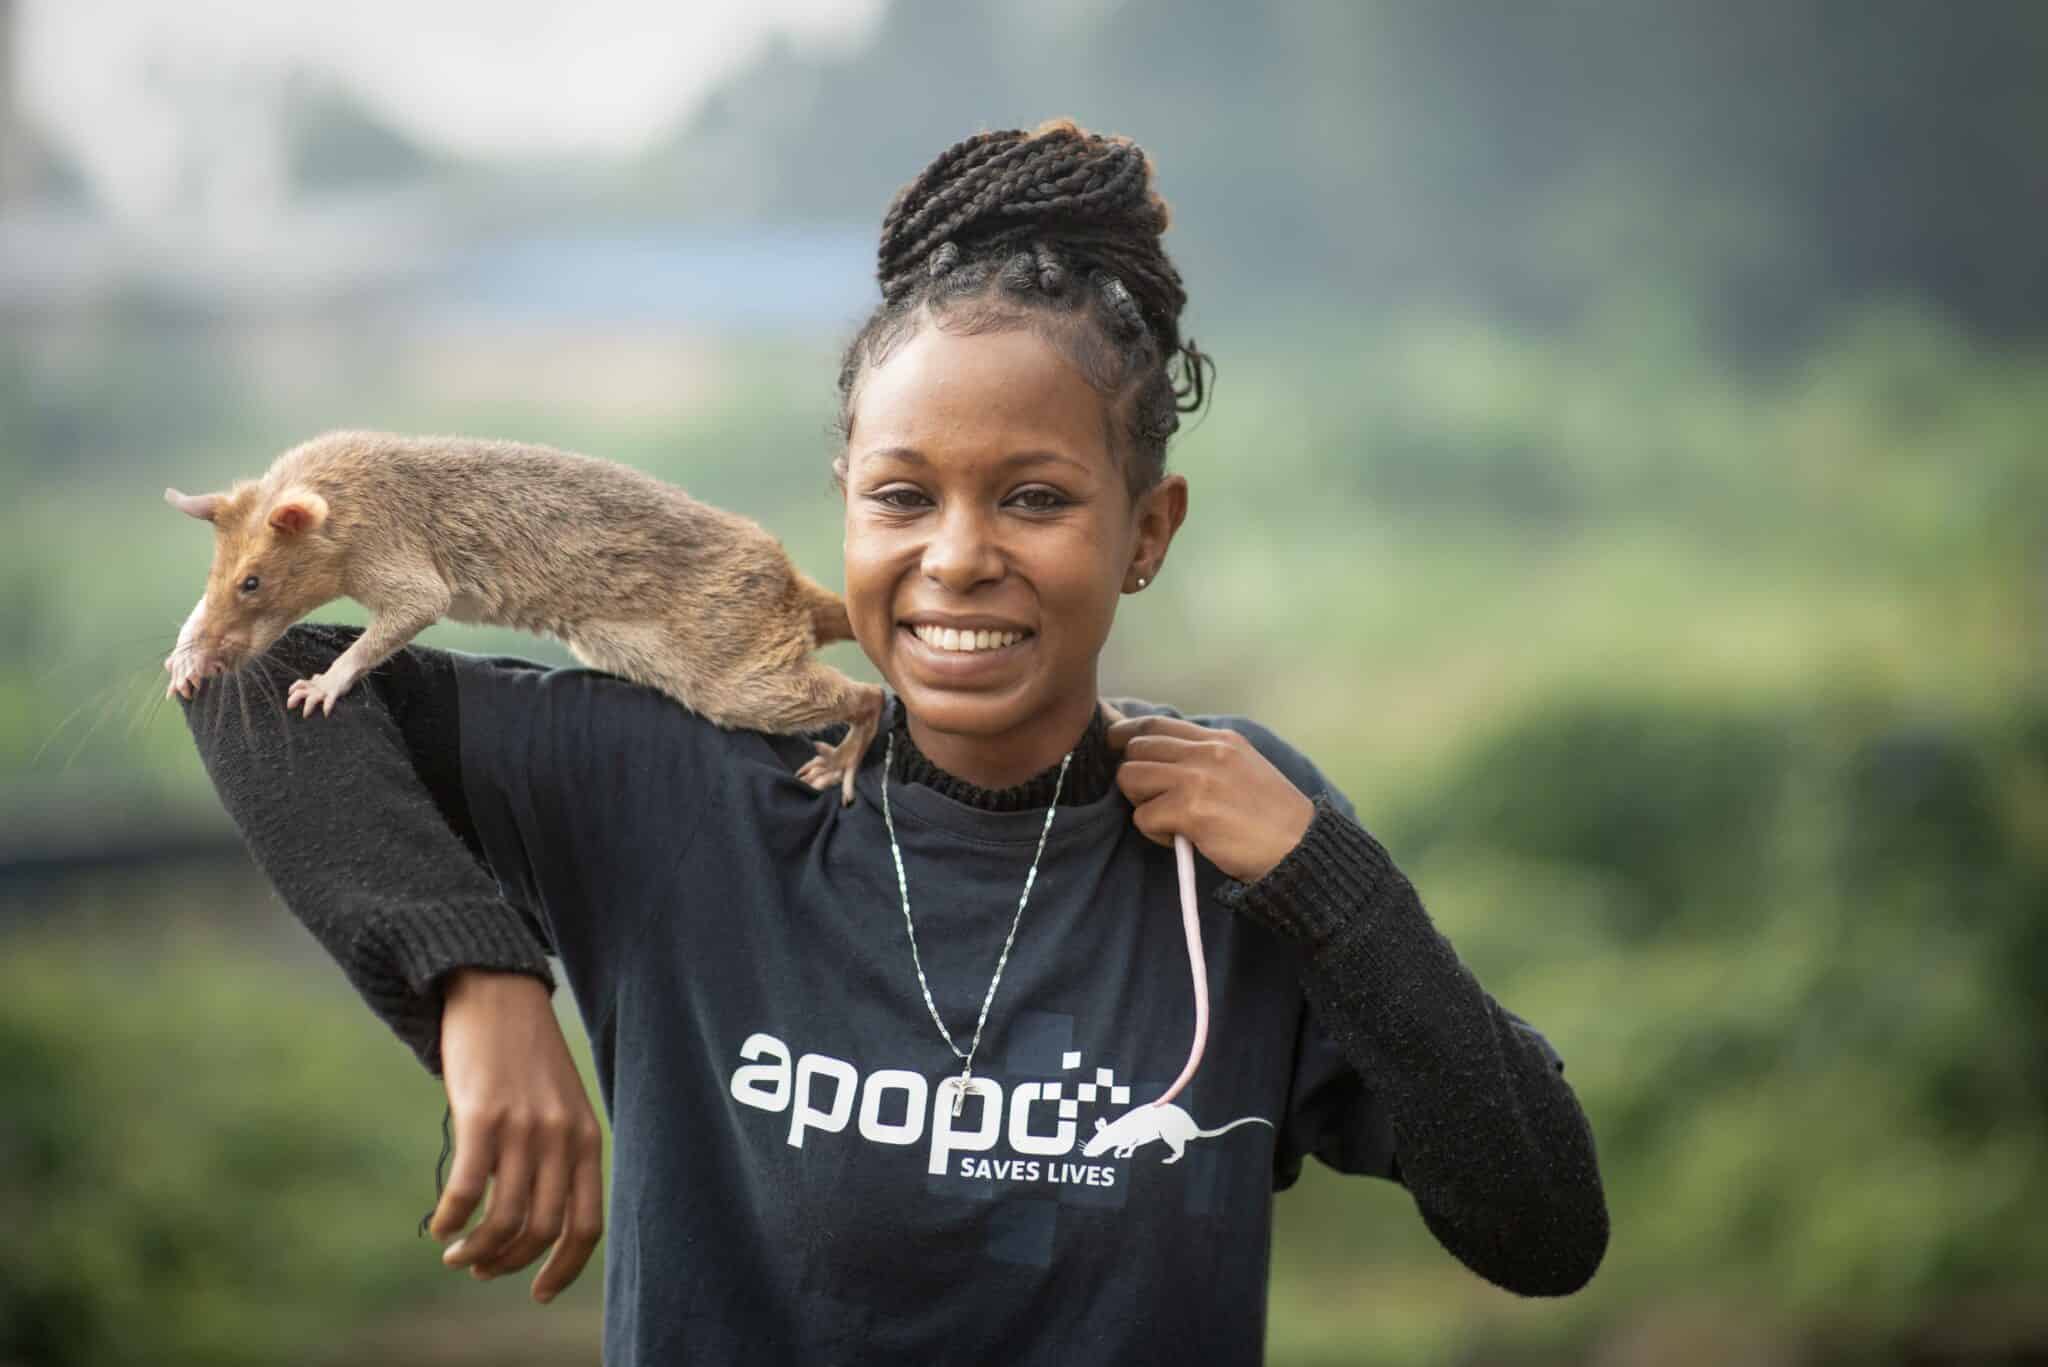 APOPO rat handler Mihret in Ethiopia with HeroRAT Julia